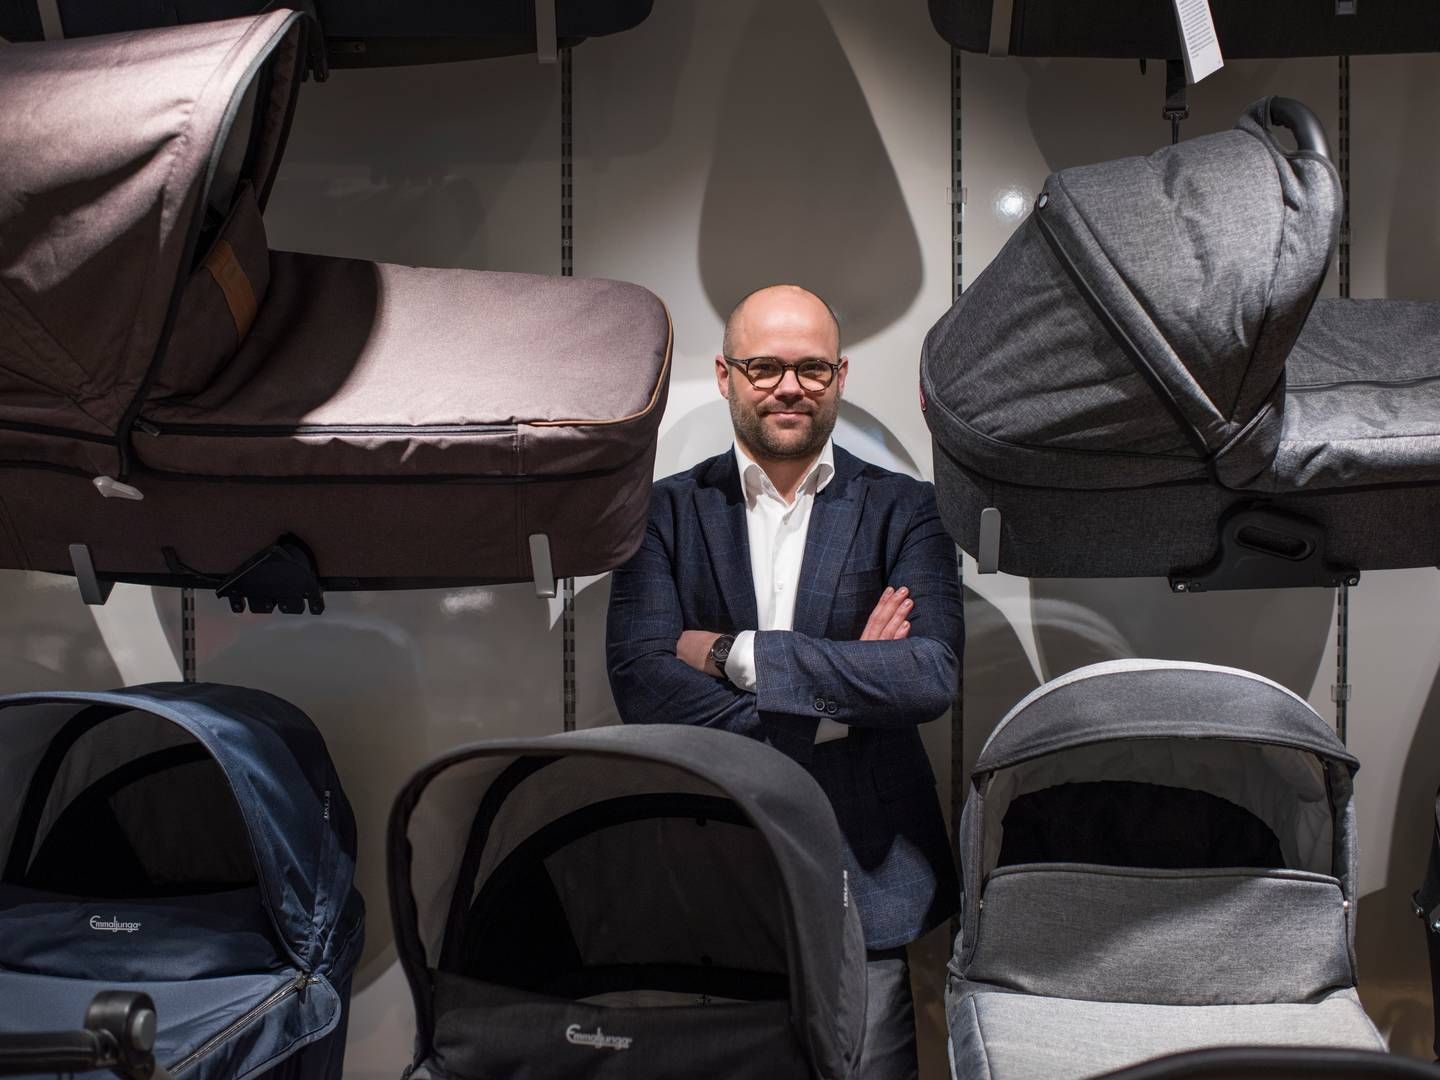 Kenneth Nørgaard glæder sig over opkøbet af den svenske babykæde, der er en del af planerne for at blive nordisk markedsleder på babyproduktmarkedet. | Foto: Joachim Ladefoged